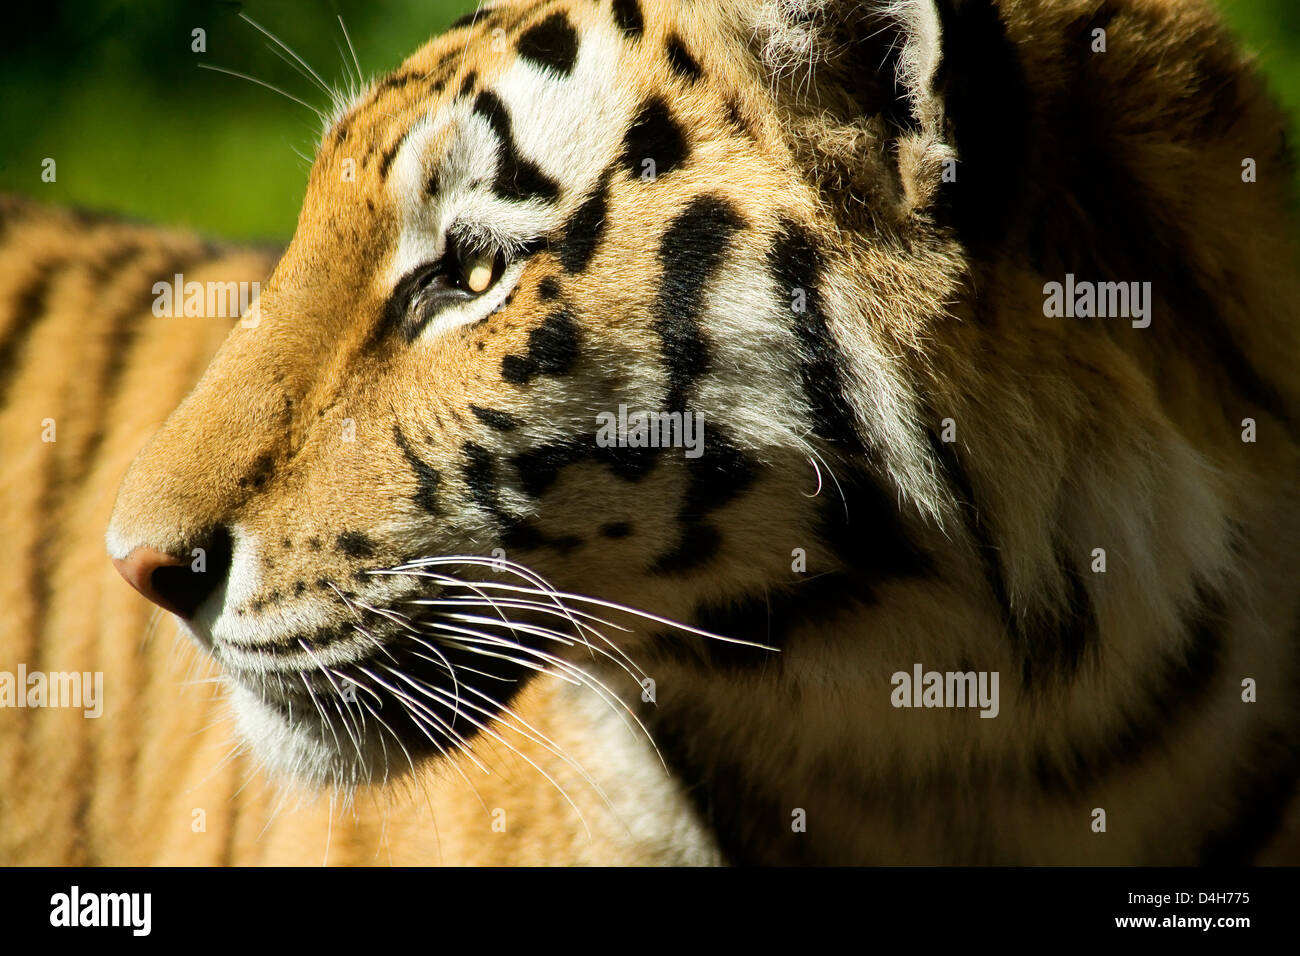 Close Up Tiger Cat's Face Stock Photo - Alamy